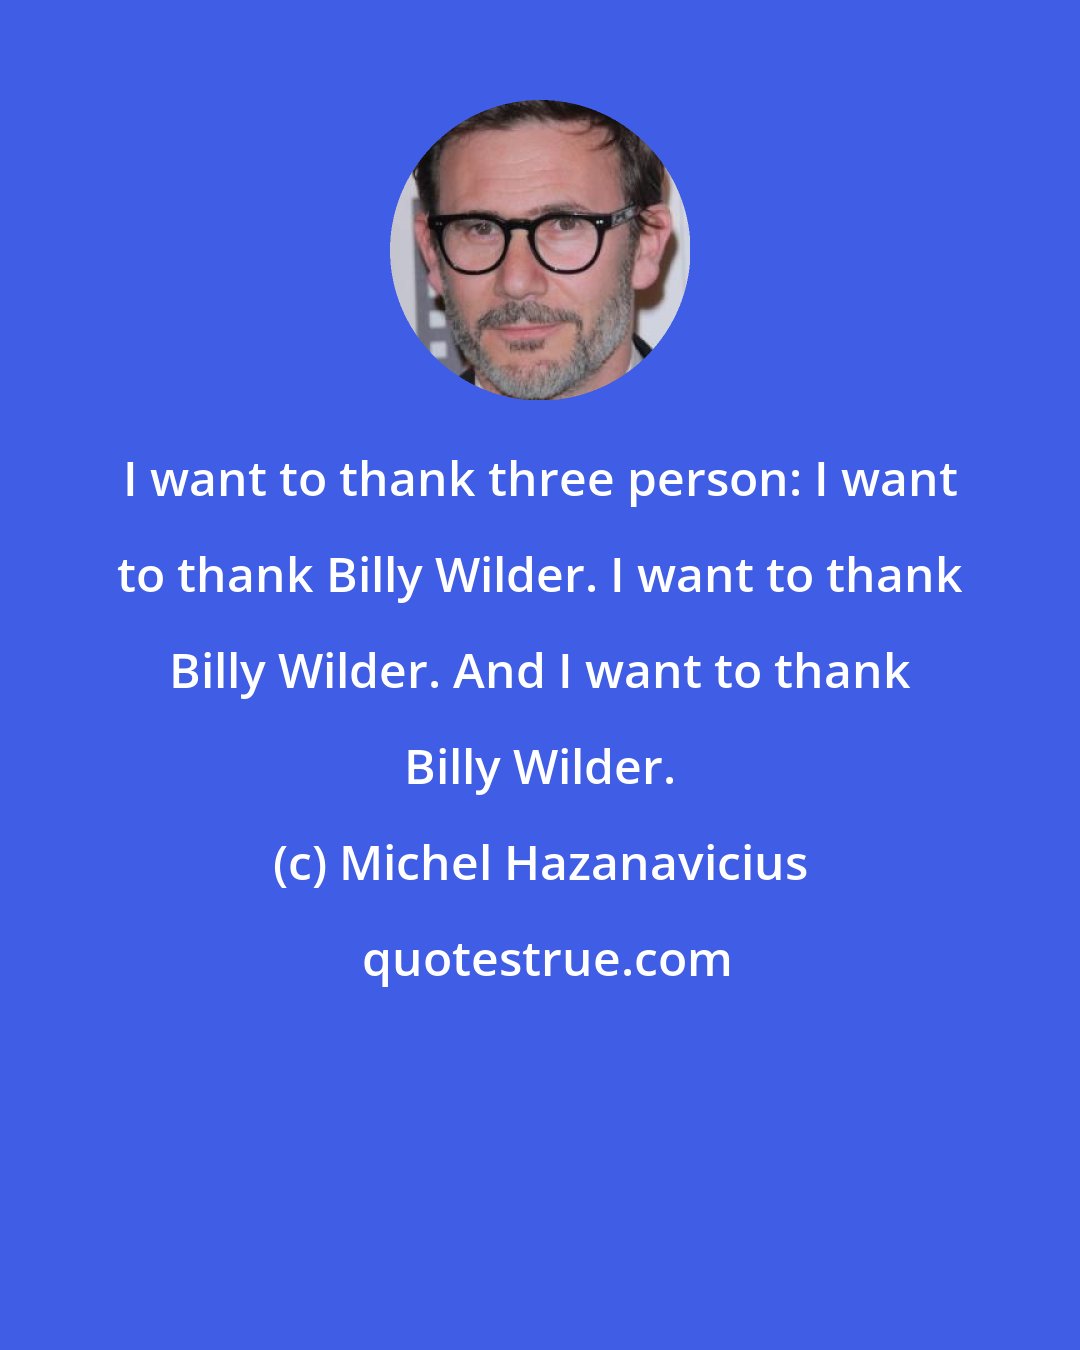 Michel Hazanavicius: I want to thank three person: I want to thank Billy Wilder. I want to thank Billy Wilder. And I want to thank Billy Wilder.